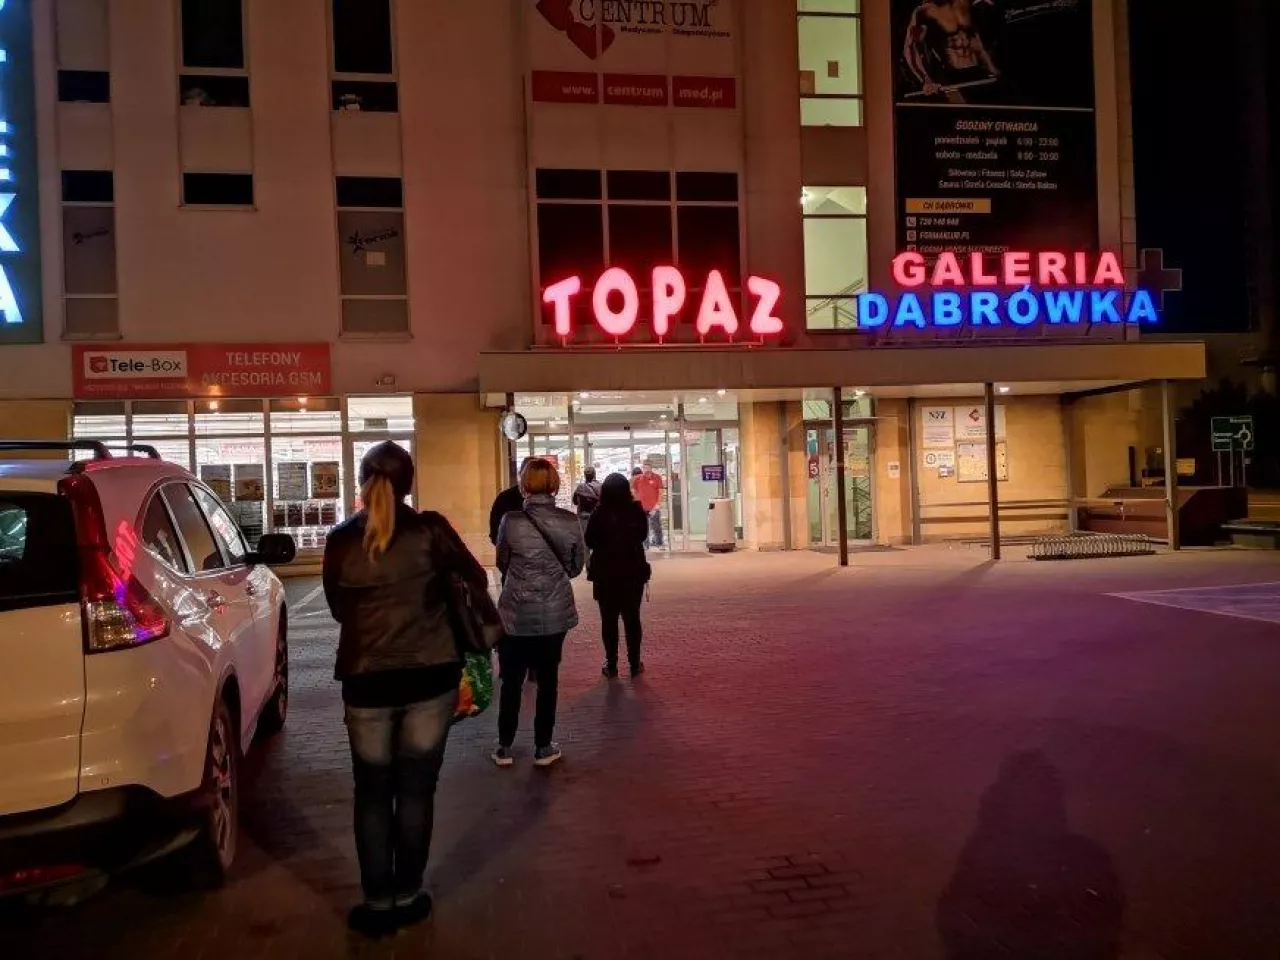 Kolejka do sklepu sieci Topaz (fot. wiadomoscikosmetyczne.pl/zdjęcie ilustracyjne)